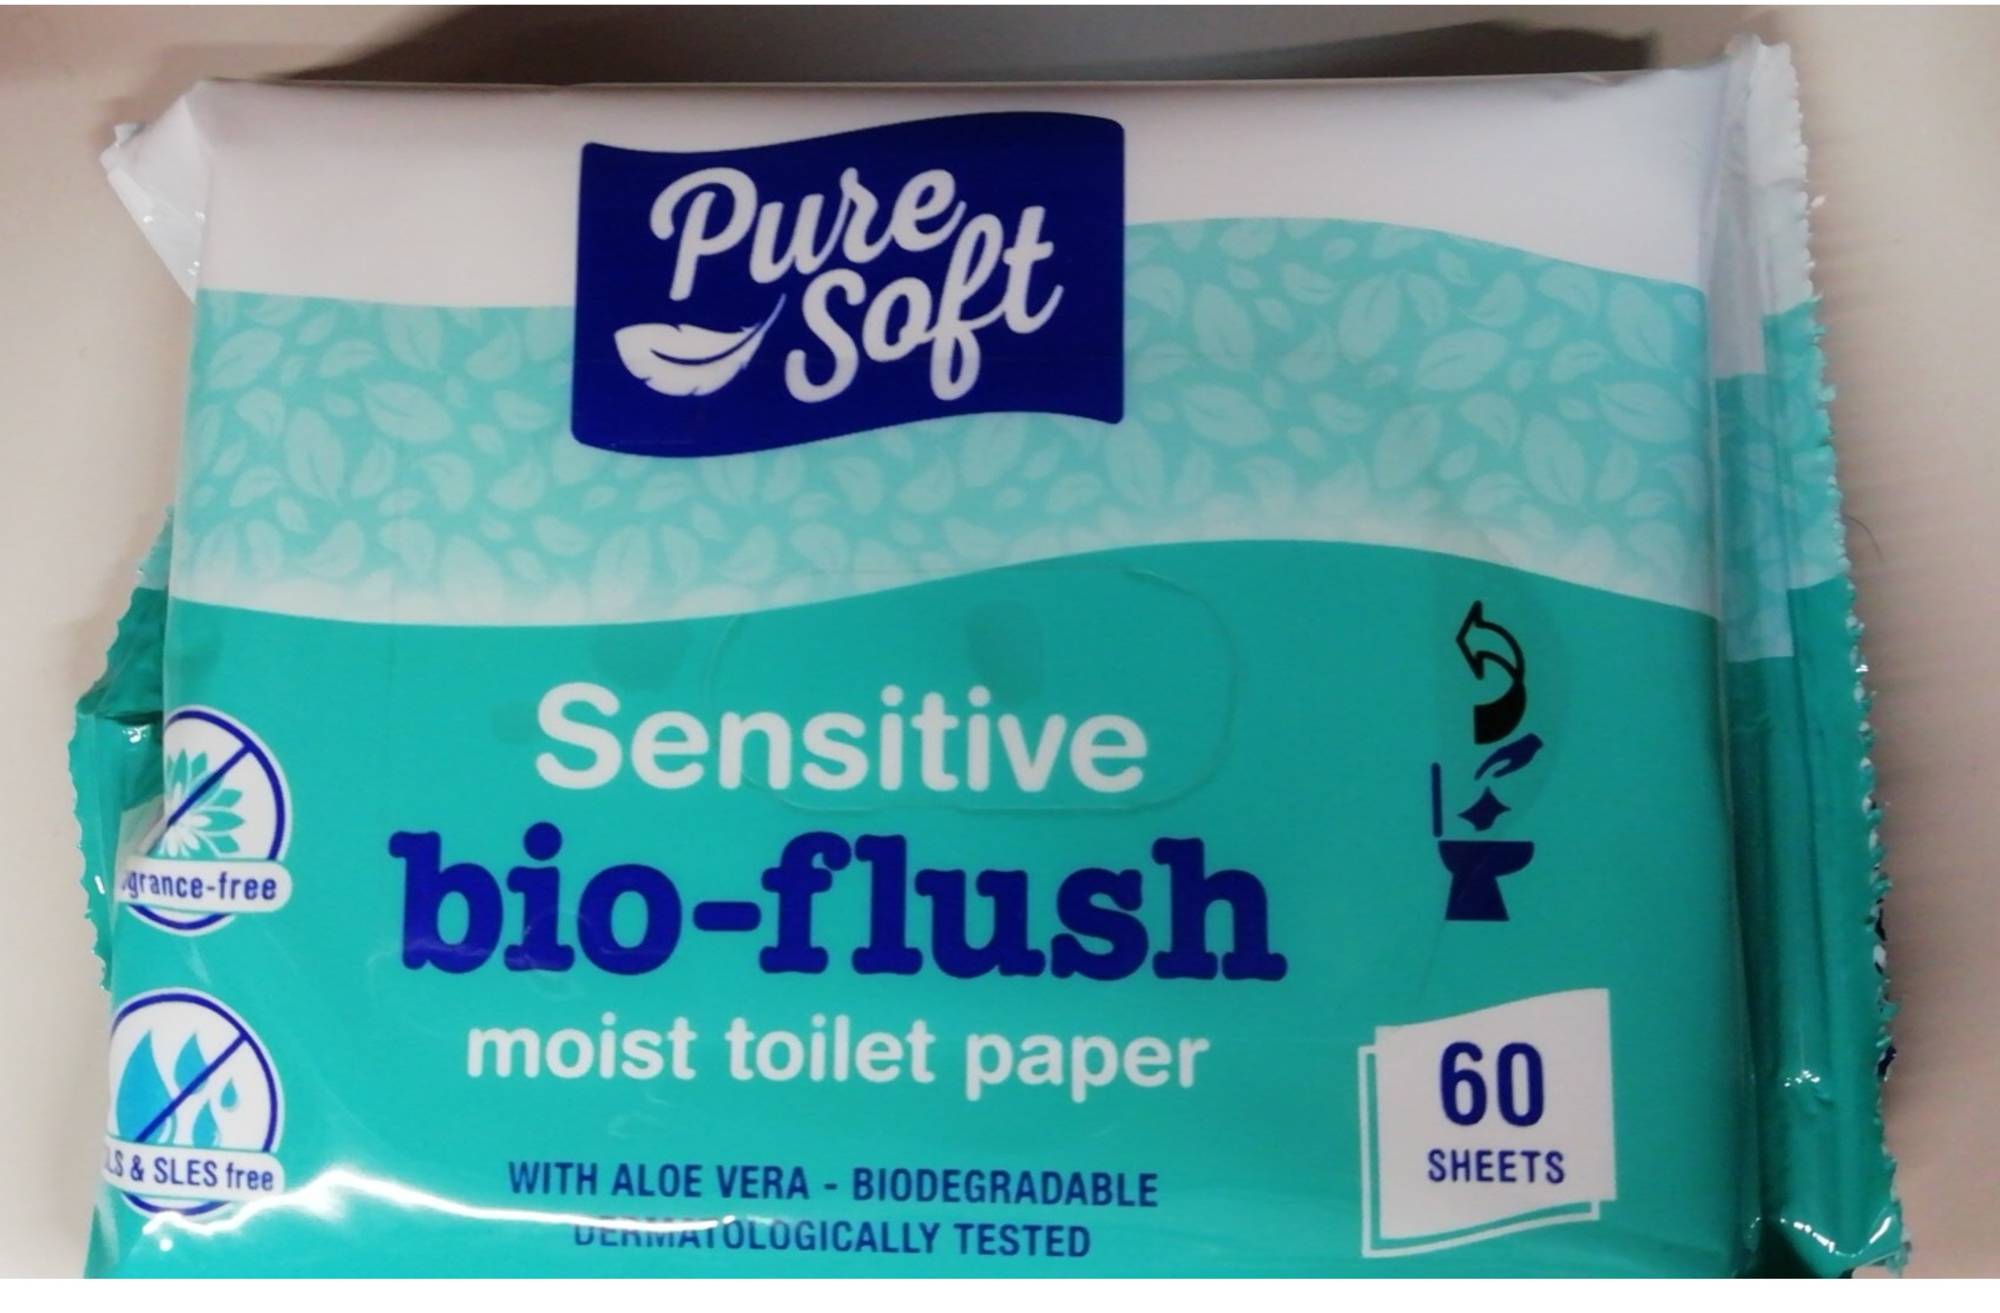 Composition FESSNETT Sensitive - Papier toilette humide peaux fragiles -  UFC-Que Choisir